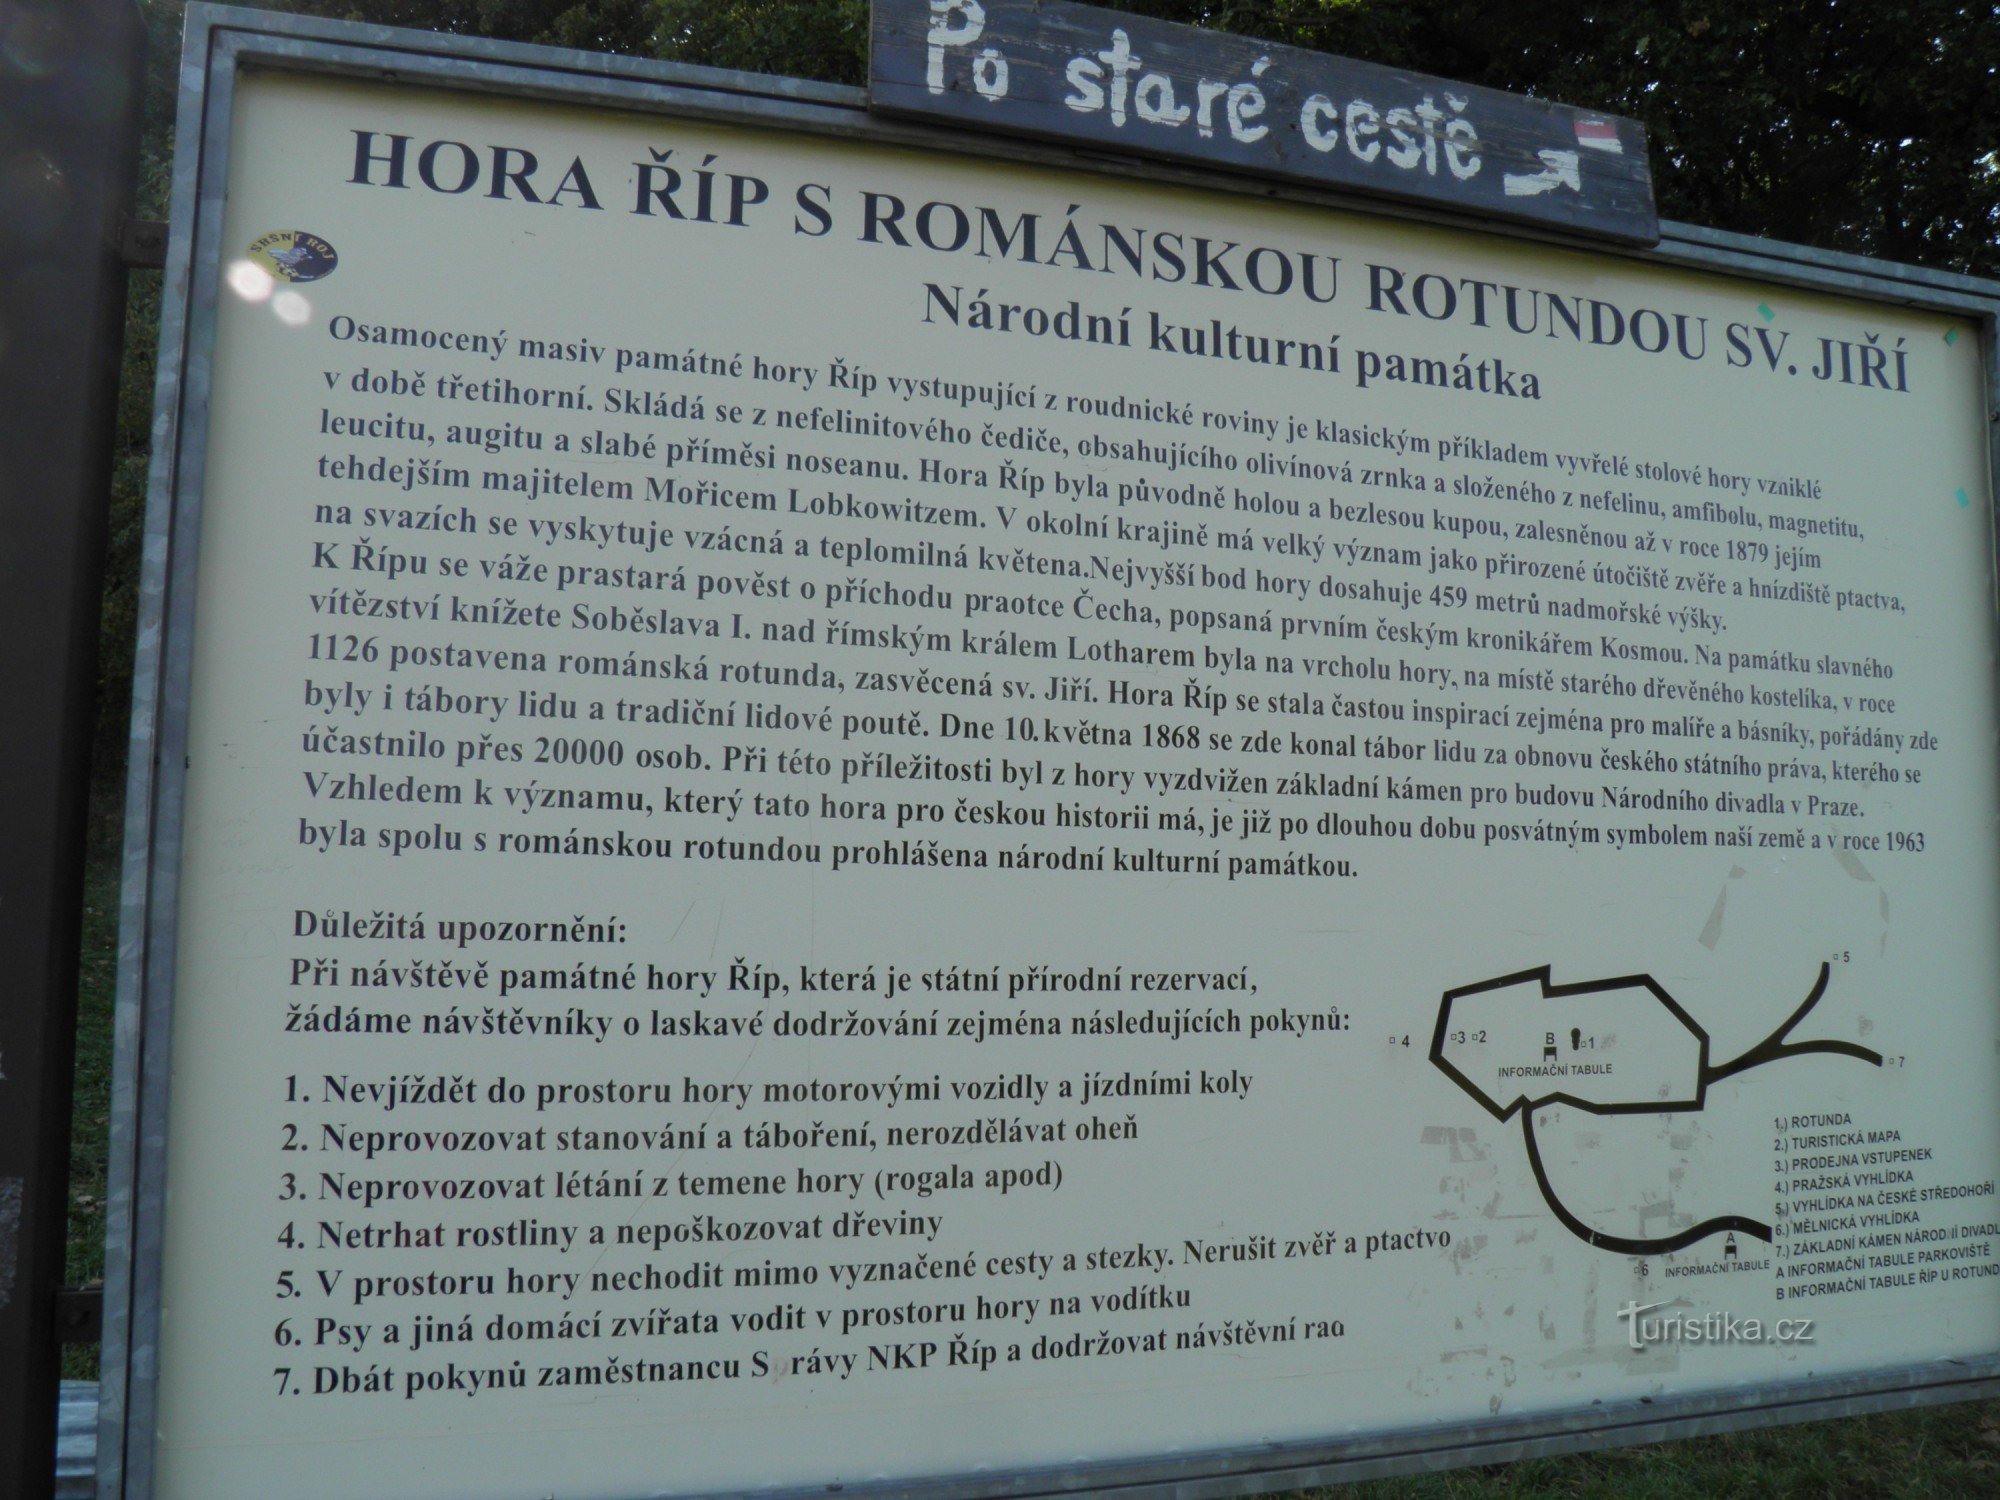 Mount Říp - et symbol på historien